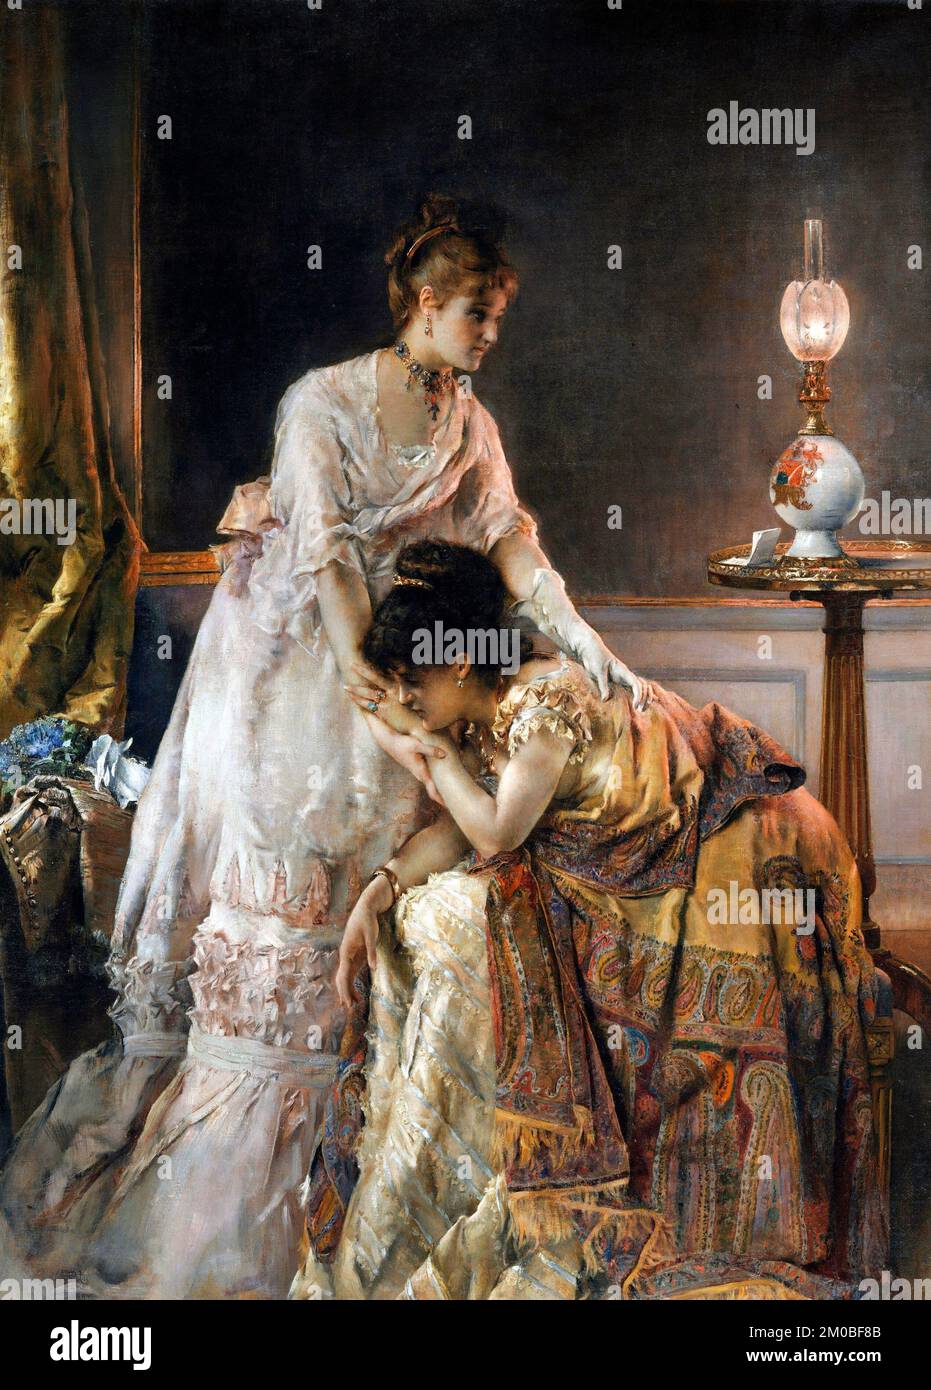 Après le bal de l'artiste belge Alfred Stevens (1823-1906), huile sur toile 1874 Banque D'Images